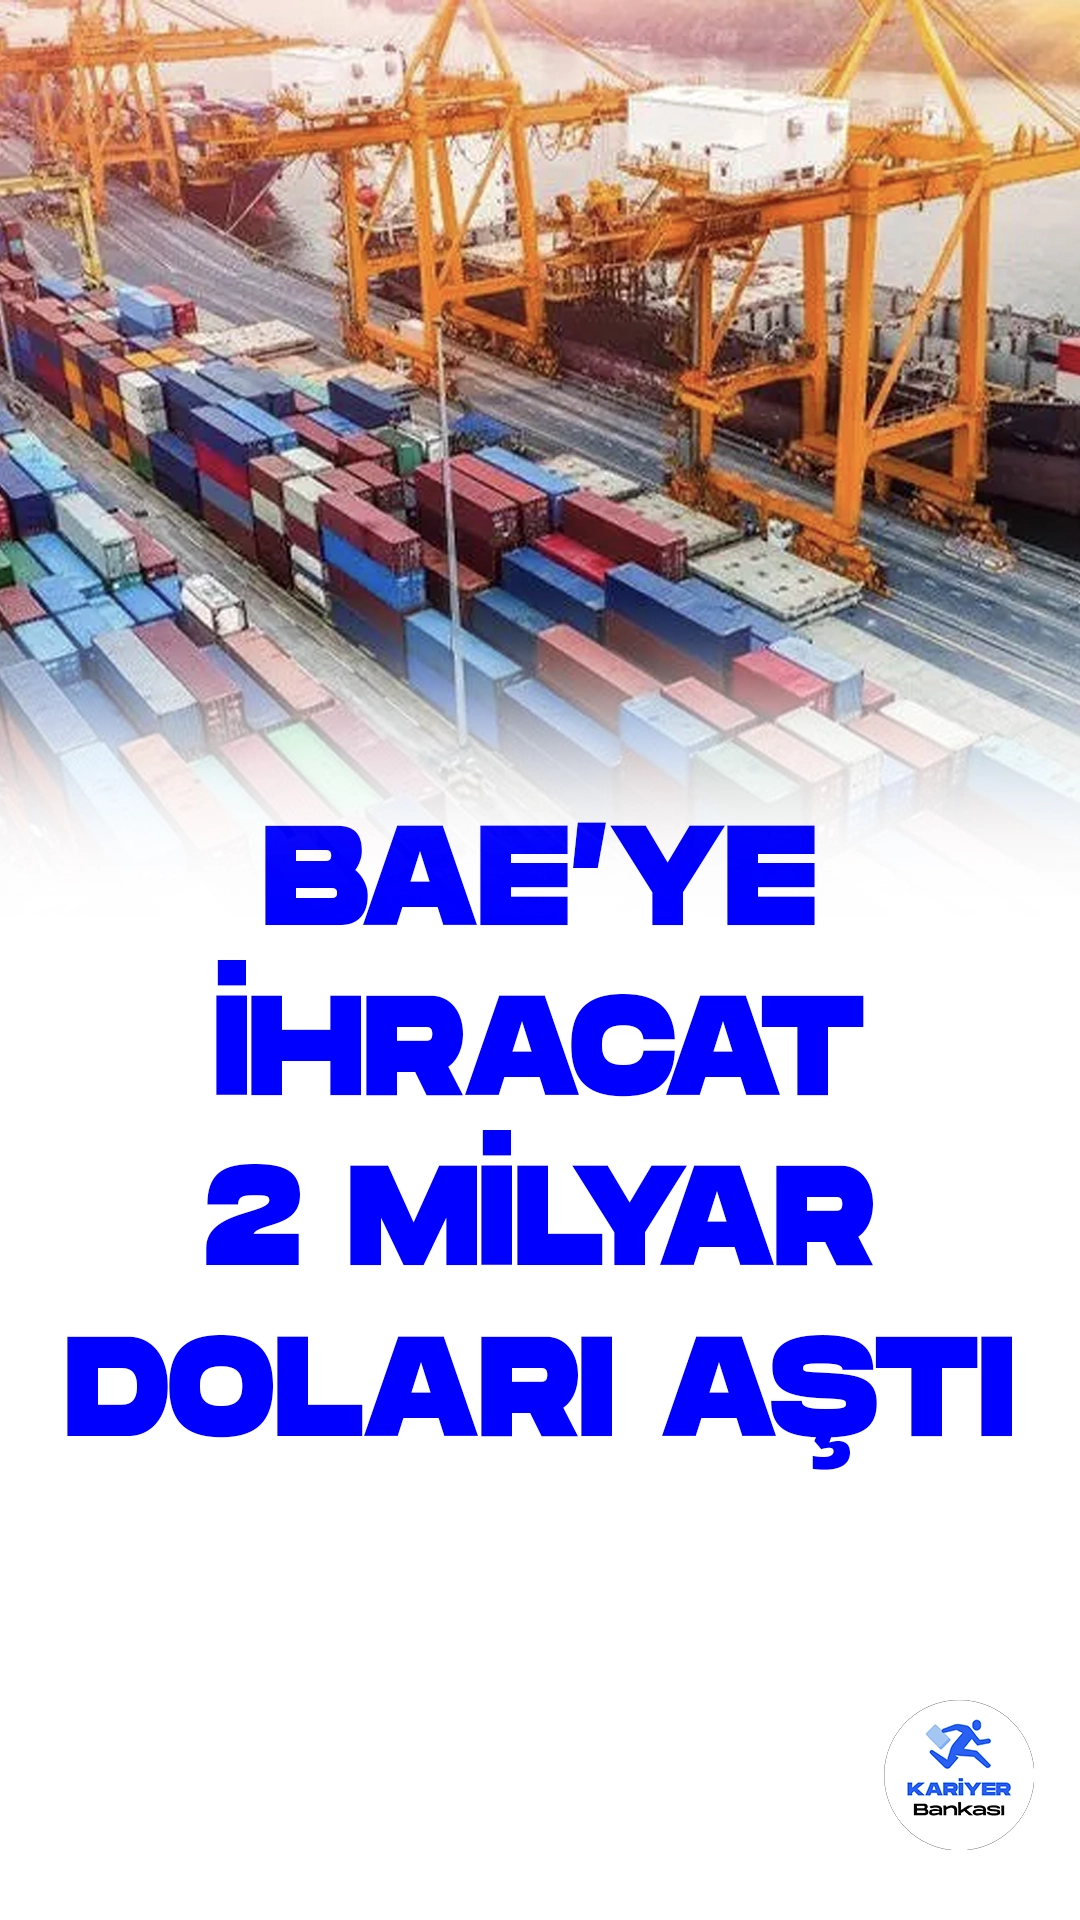 Türkiye'nin BAE'ye İhracatı İlk Yarıda 2 Milyar Doları Aştı.Türkiye'nin Birleşik Arap Emirlikleri'ne (BAE) ihracatı, bu yılın ilk yarısında 2 milyar doları aşarak önemli bir artış gösterdi. Türkiye'nin Orta Doğu ülkeleriyle ilişkilerinin normalleşmesiyle birlikte, iki ülke arasındaki ikili ticaret hızla gelişiyor.